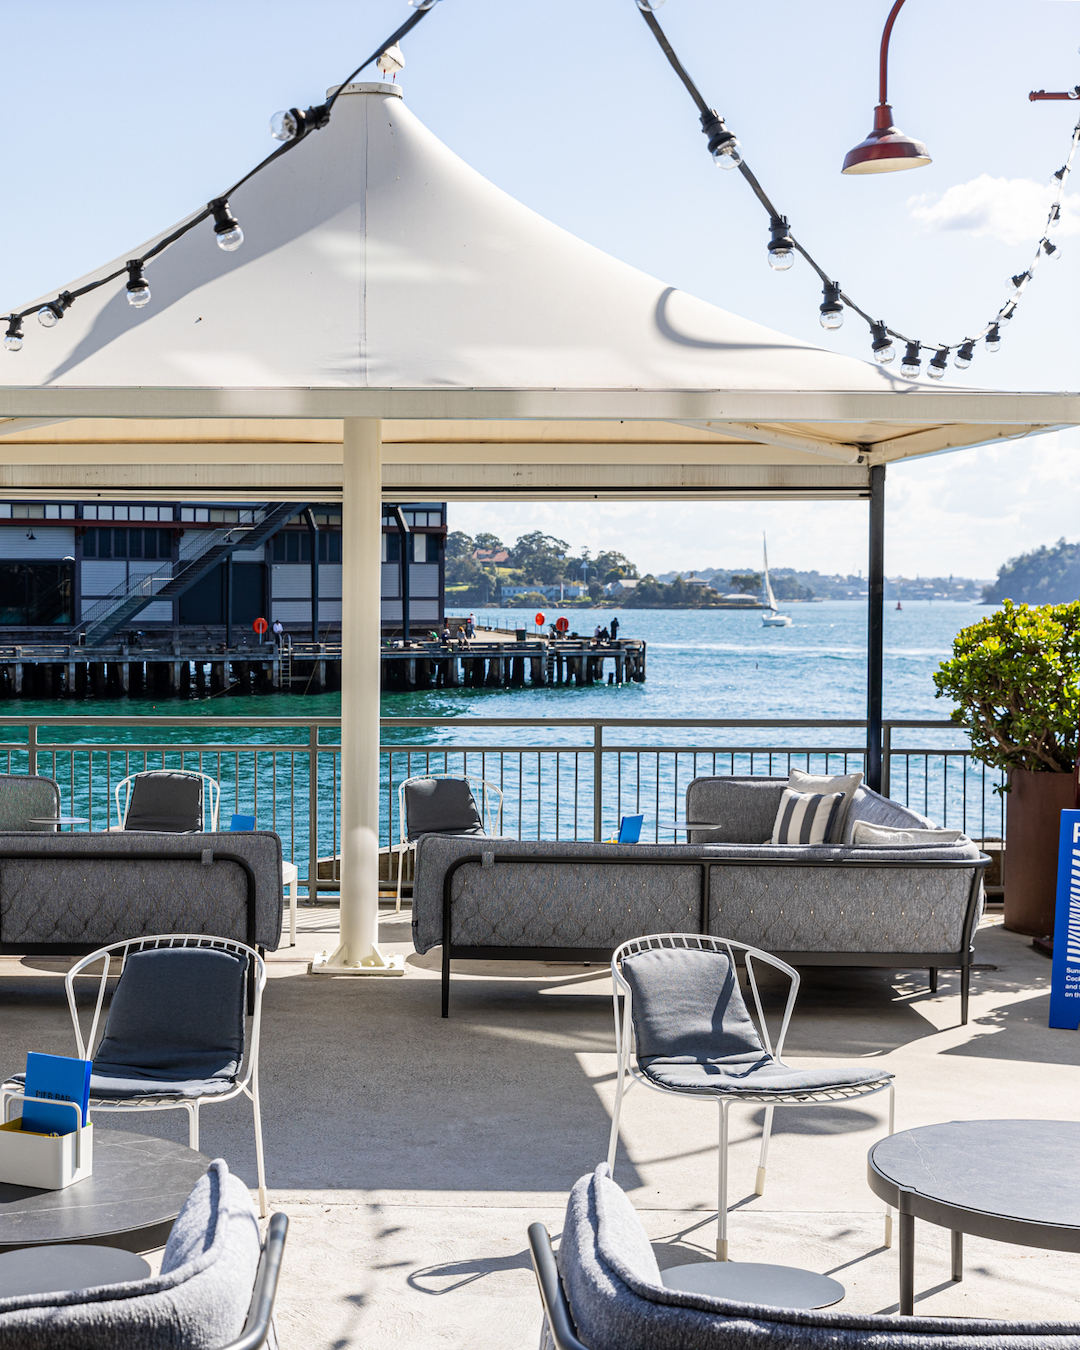 waterfront restaurants sydney pier bar